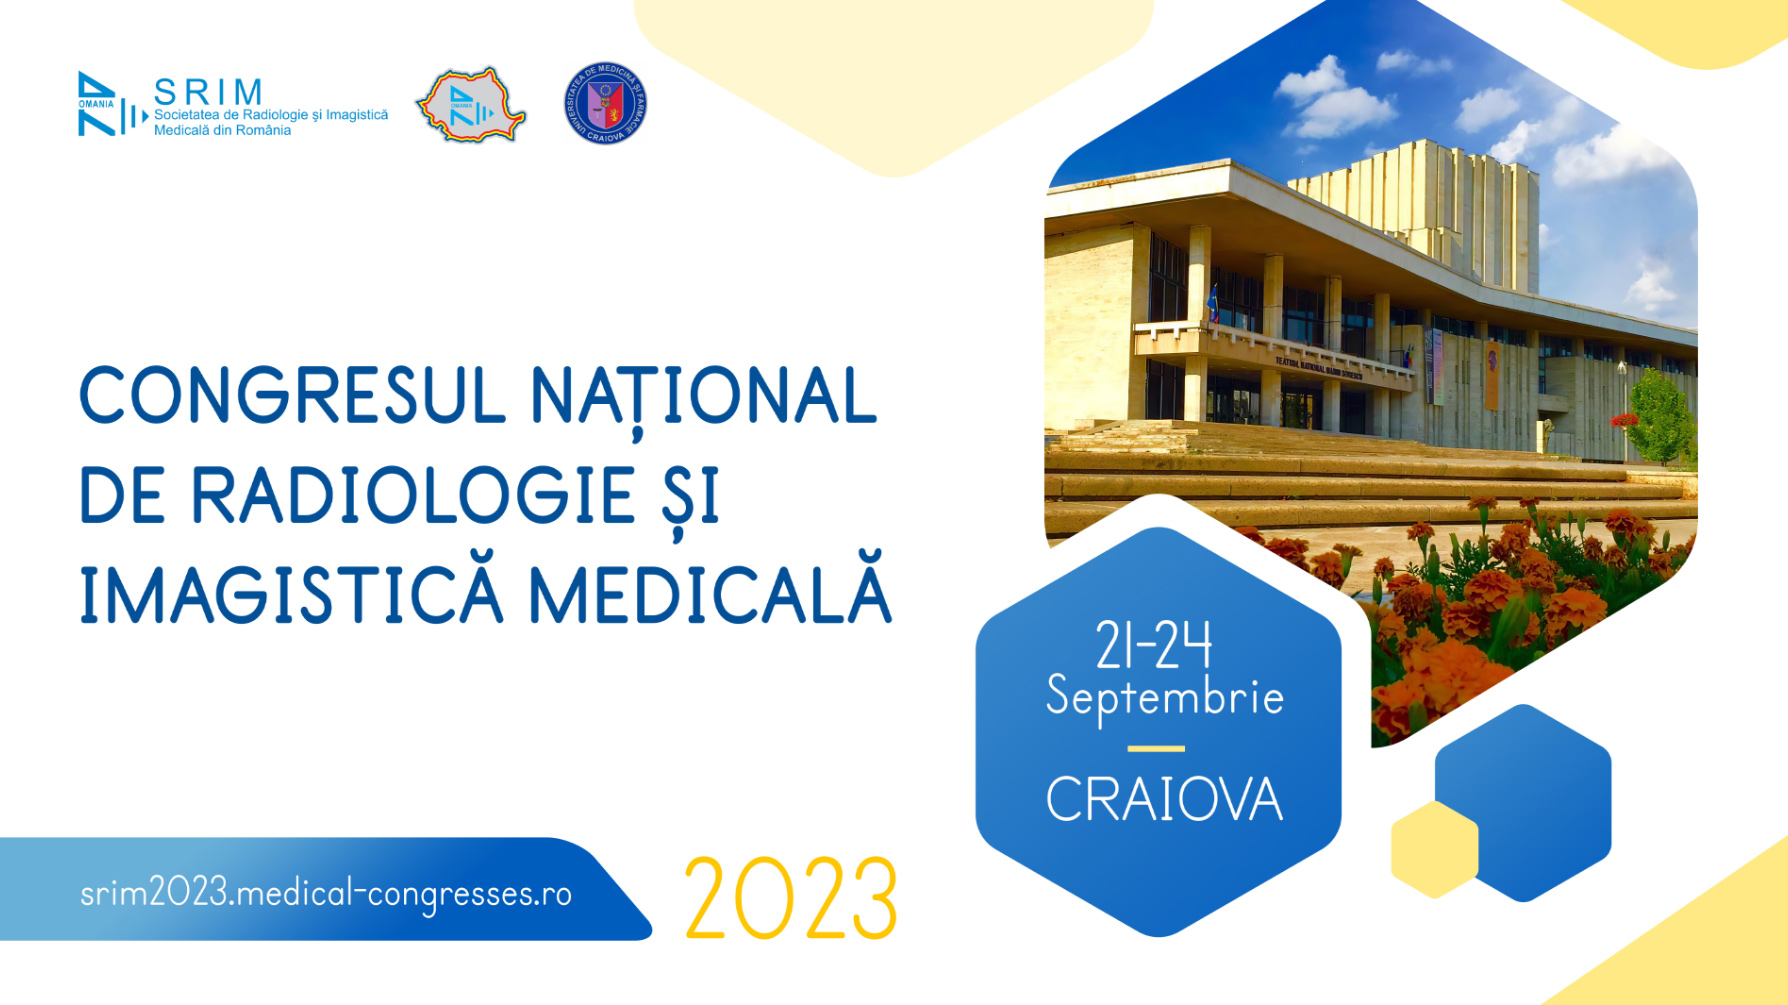 Congresul Național de Radiologie și Imagistică Medicală începe la Craiova